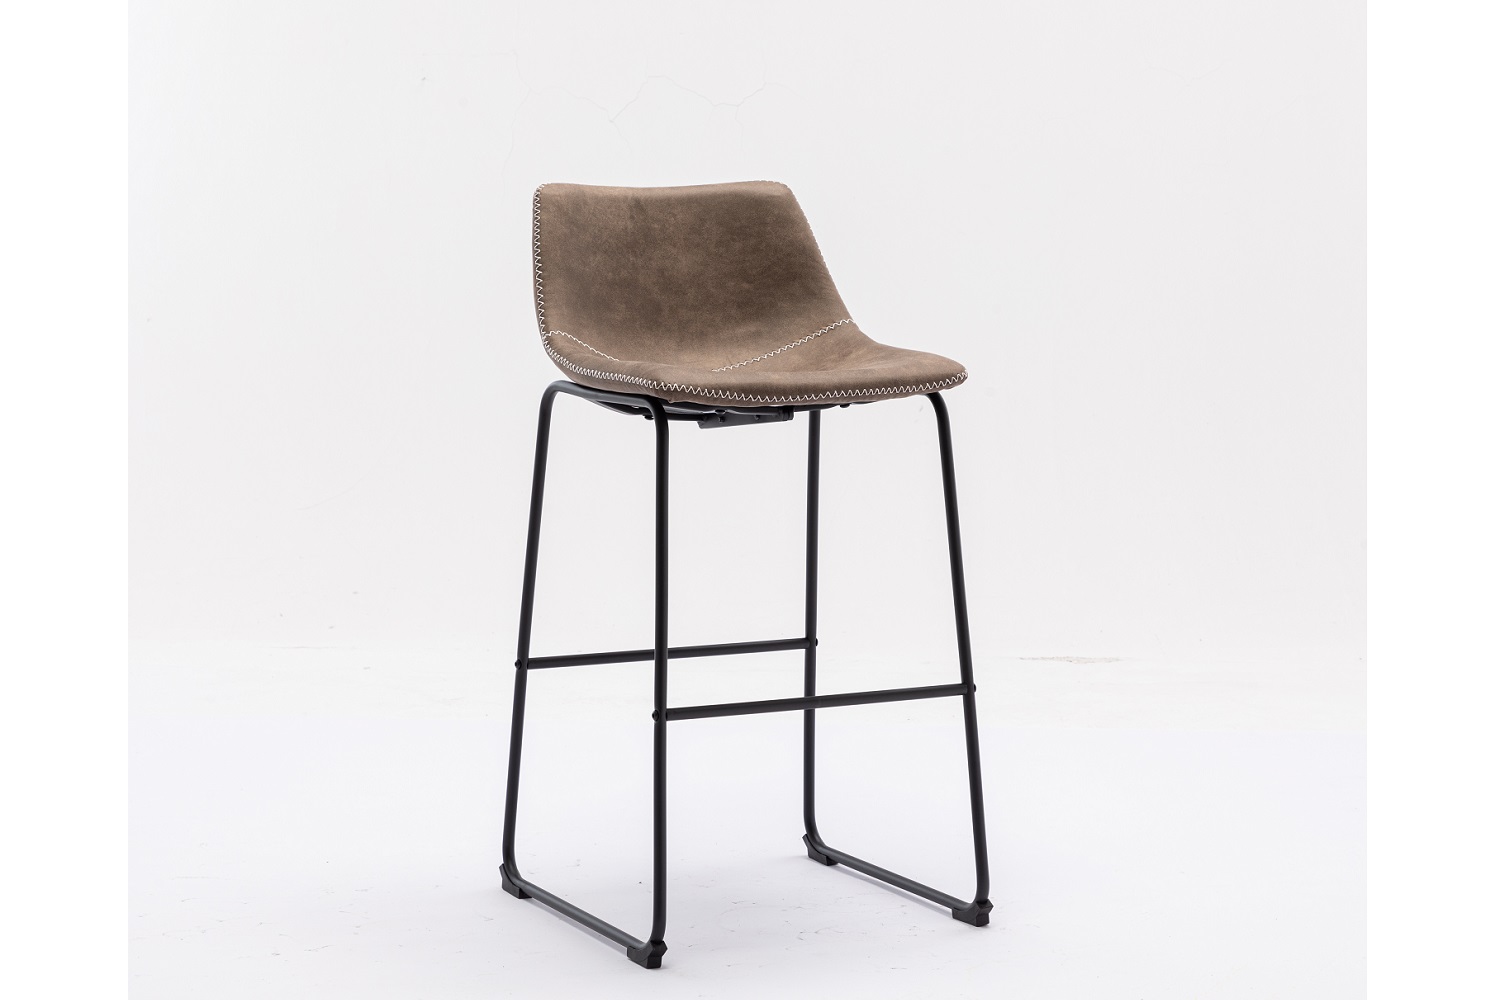 LuxD Designová barová židle Alba taupe